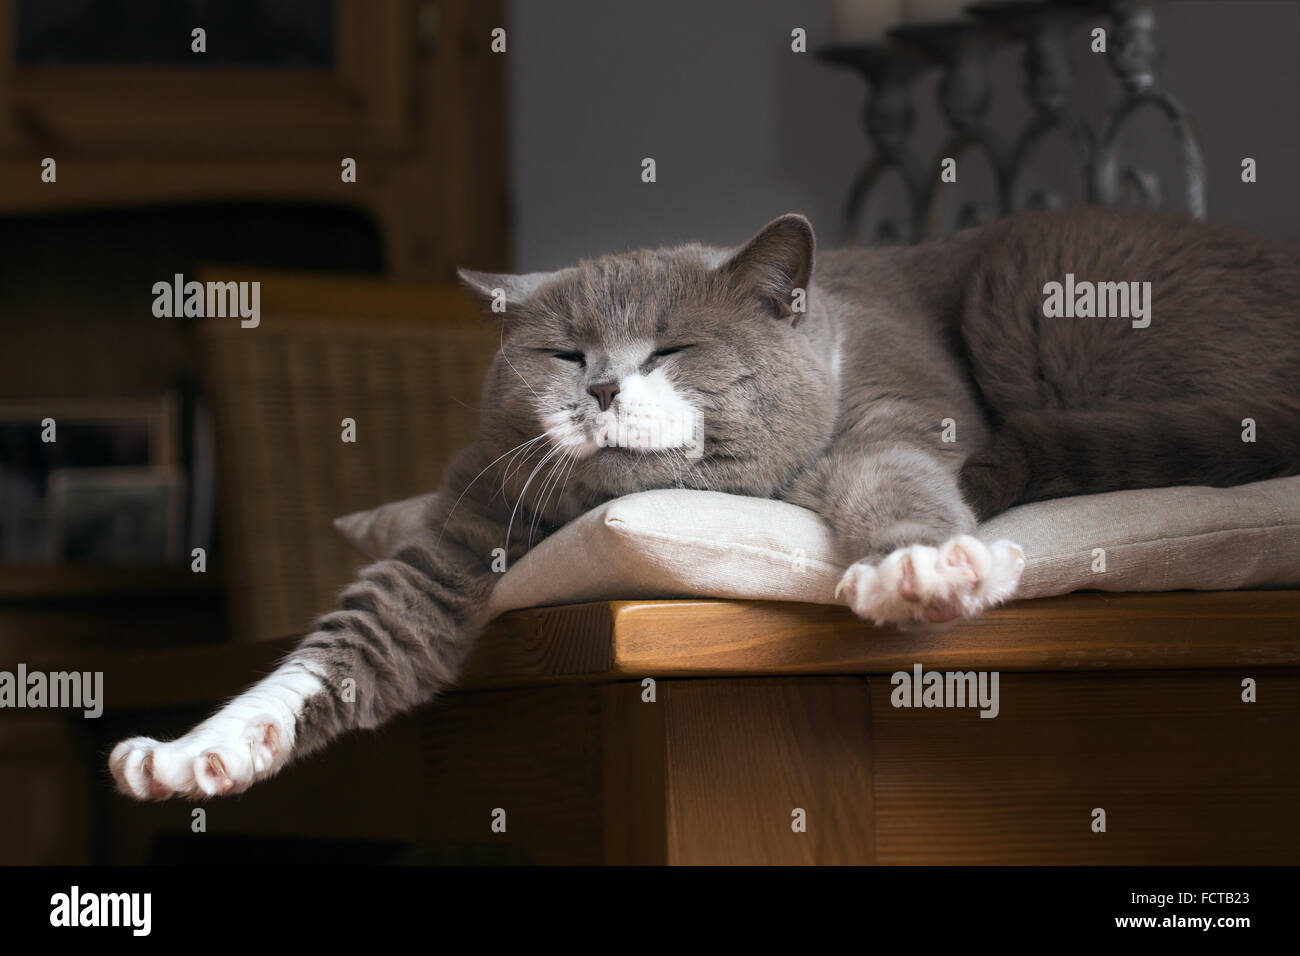 Carino British Shorthair cat si sveglia su un tavolo nella stanza vivente Foto Stock